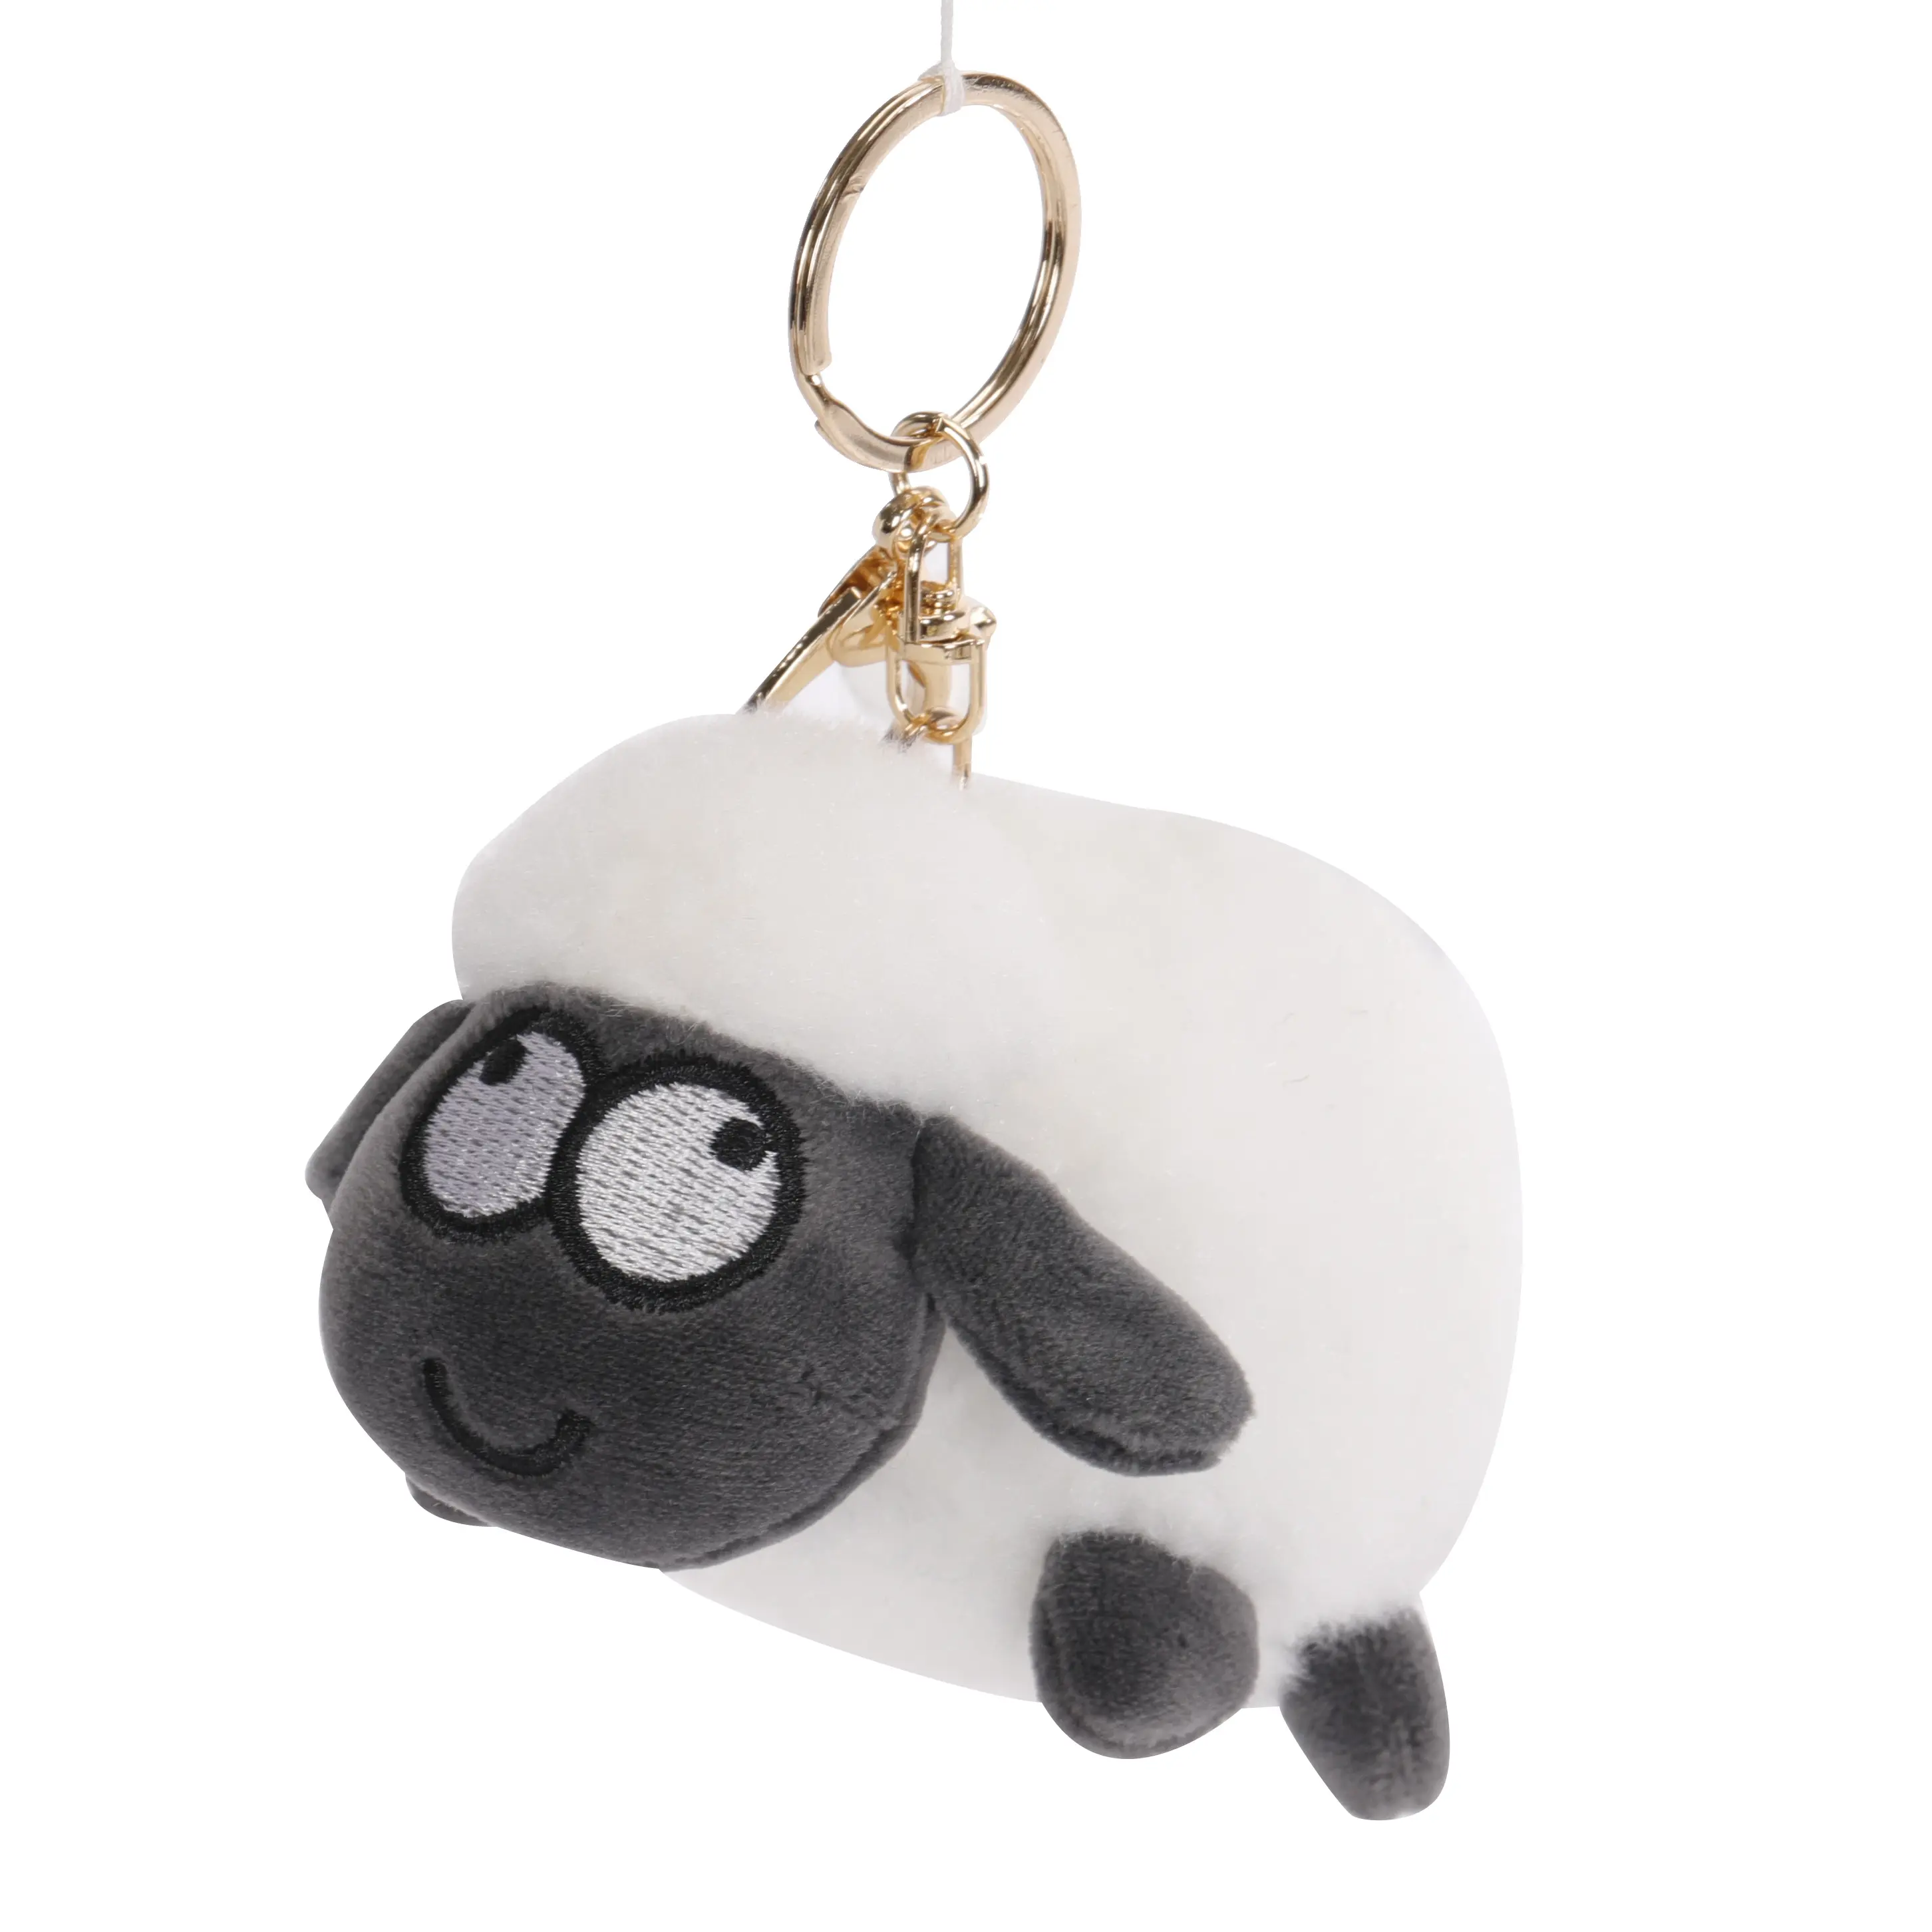 Chất lượng cao sang trọng Keychain PU da dê Keychain dê Mặt dây chuyền dễ thương Cừu mặt dây chuyền thực tế hình dạng động vật Keychain